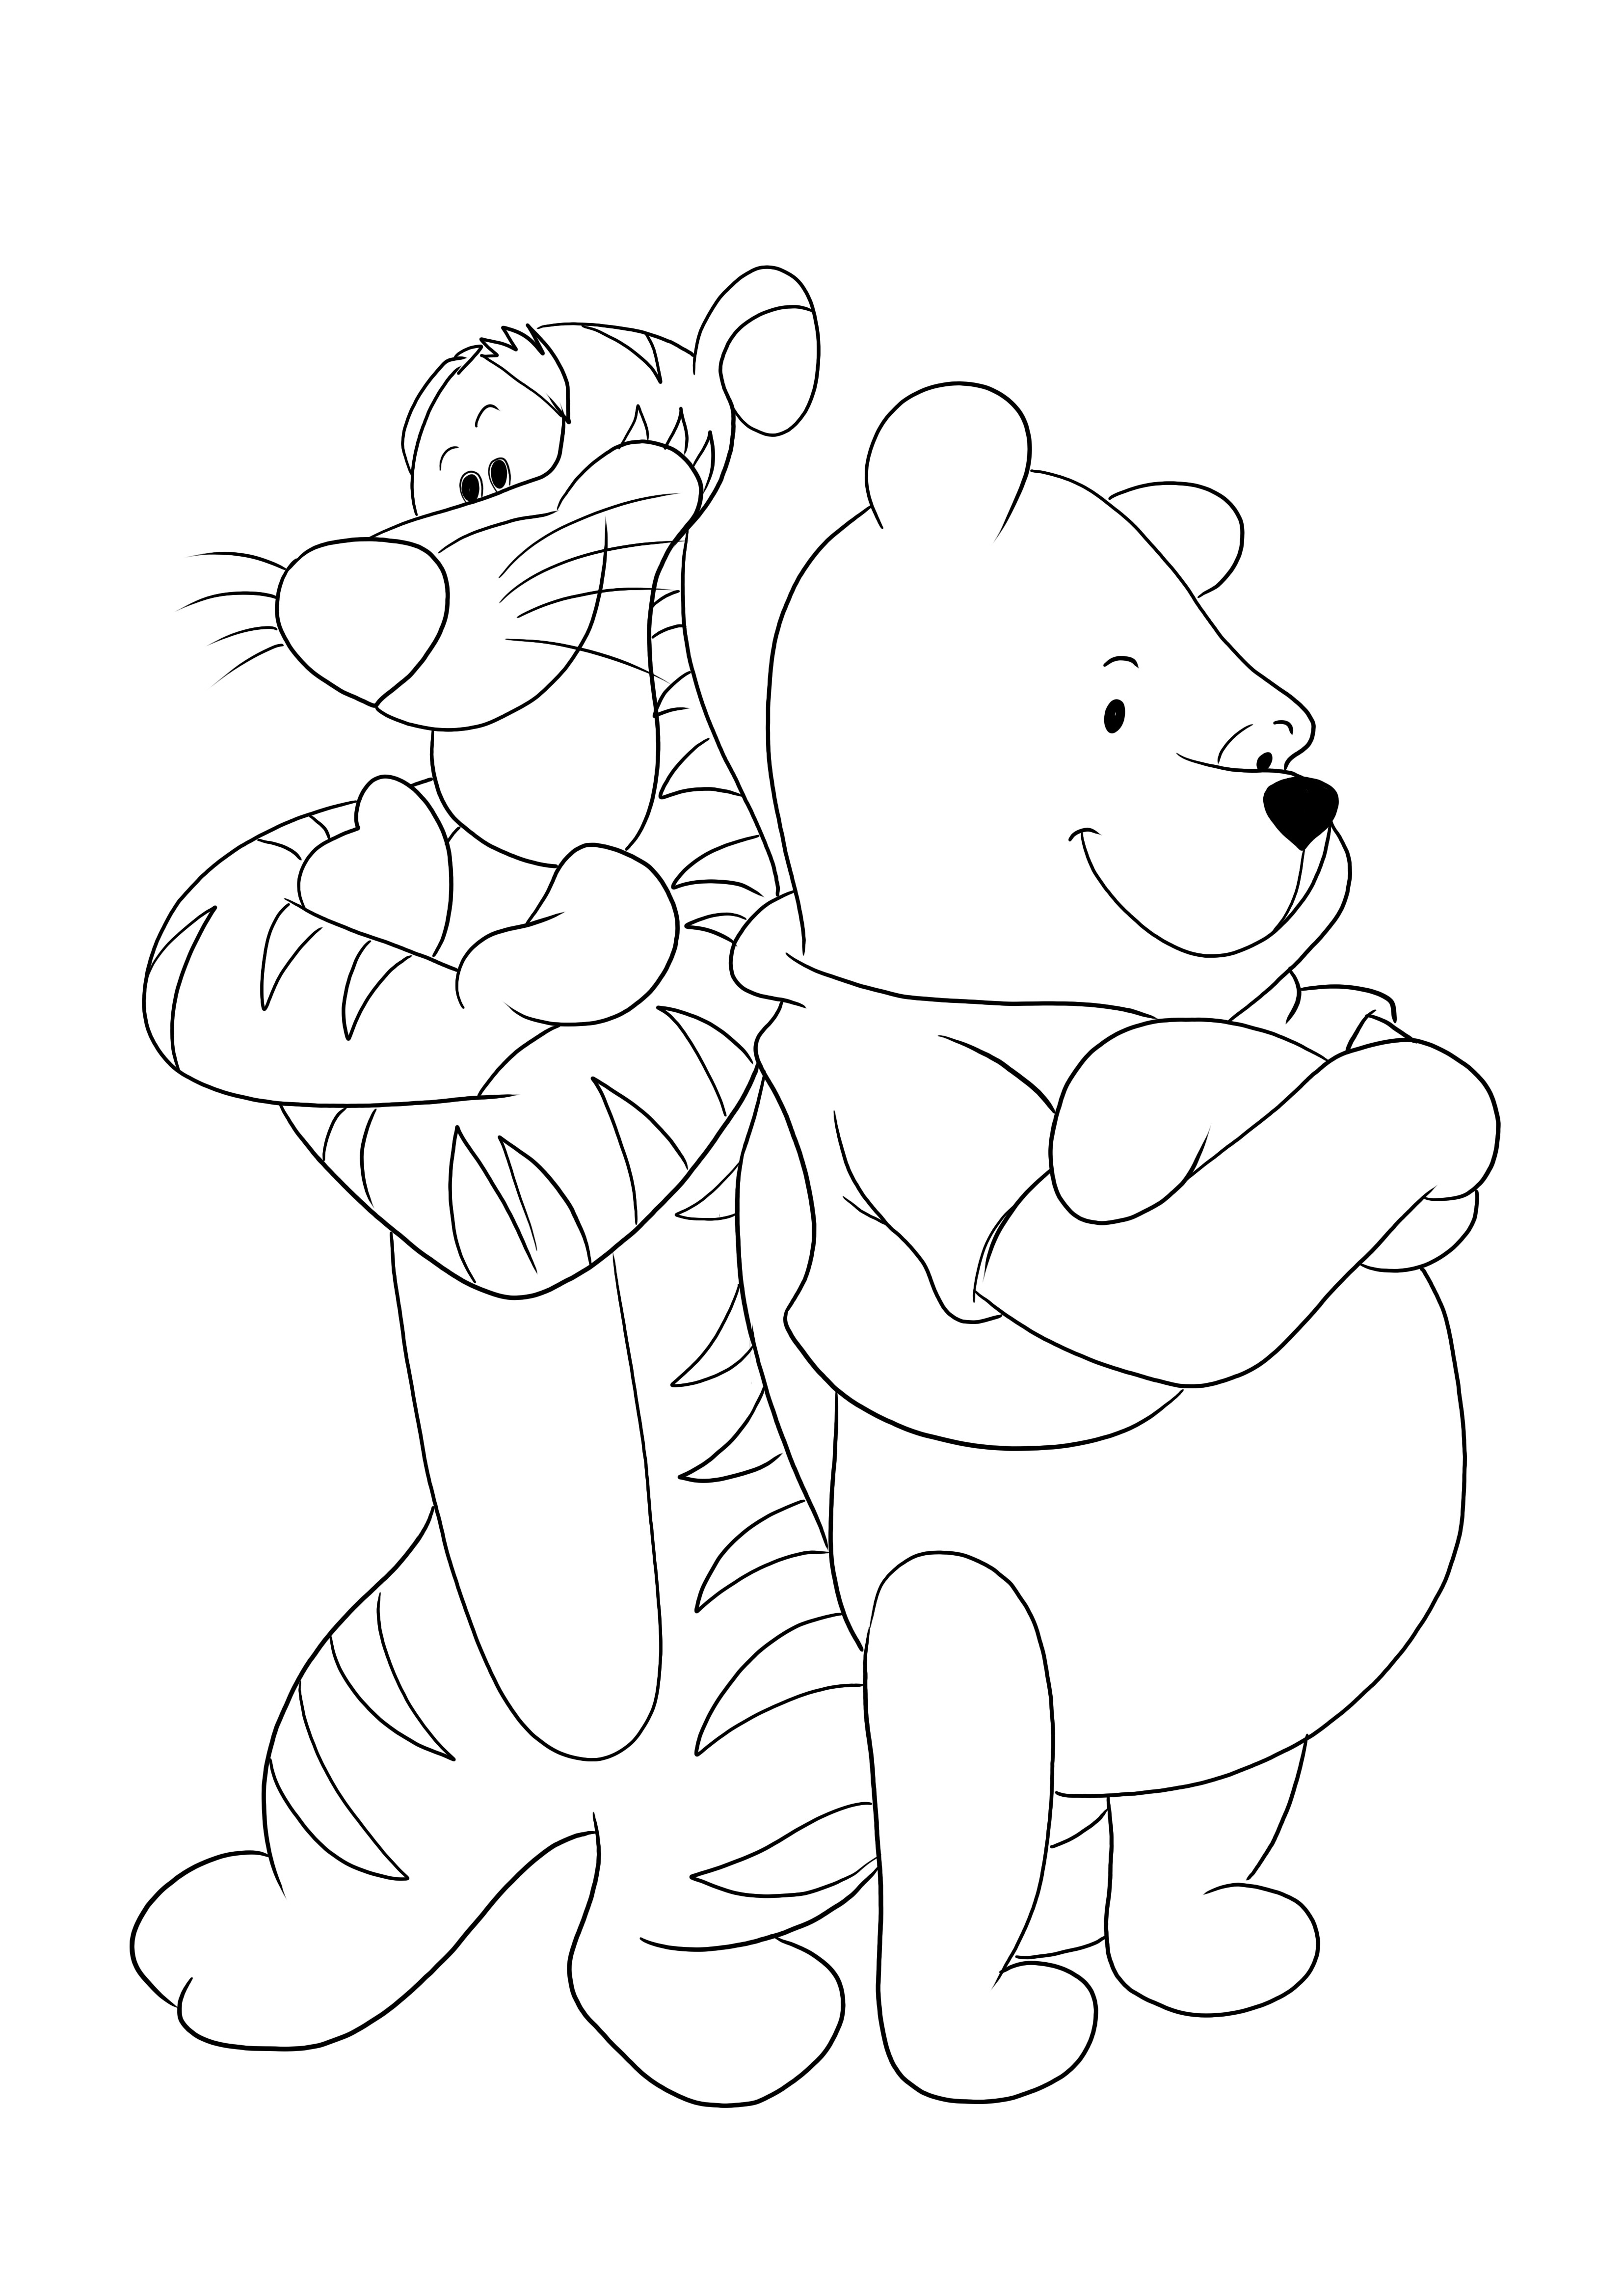 Tigre y Winnie de brazos cruzados: una divertida página para colorear para que los niños impriman y coloreen gratis